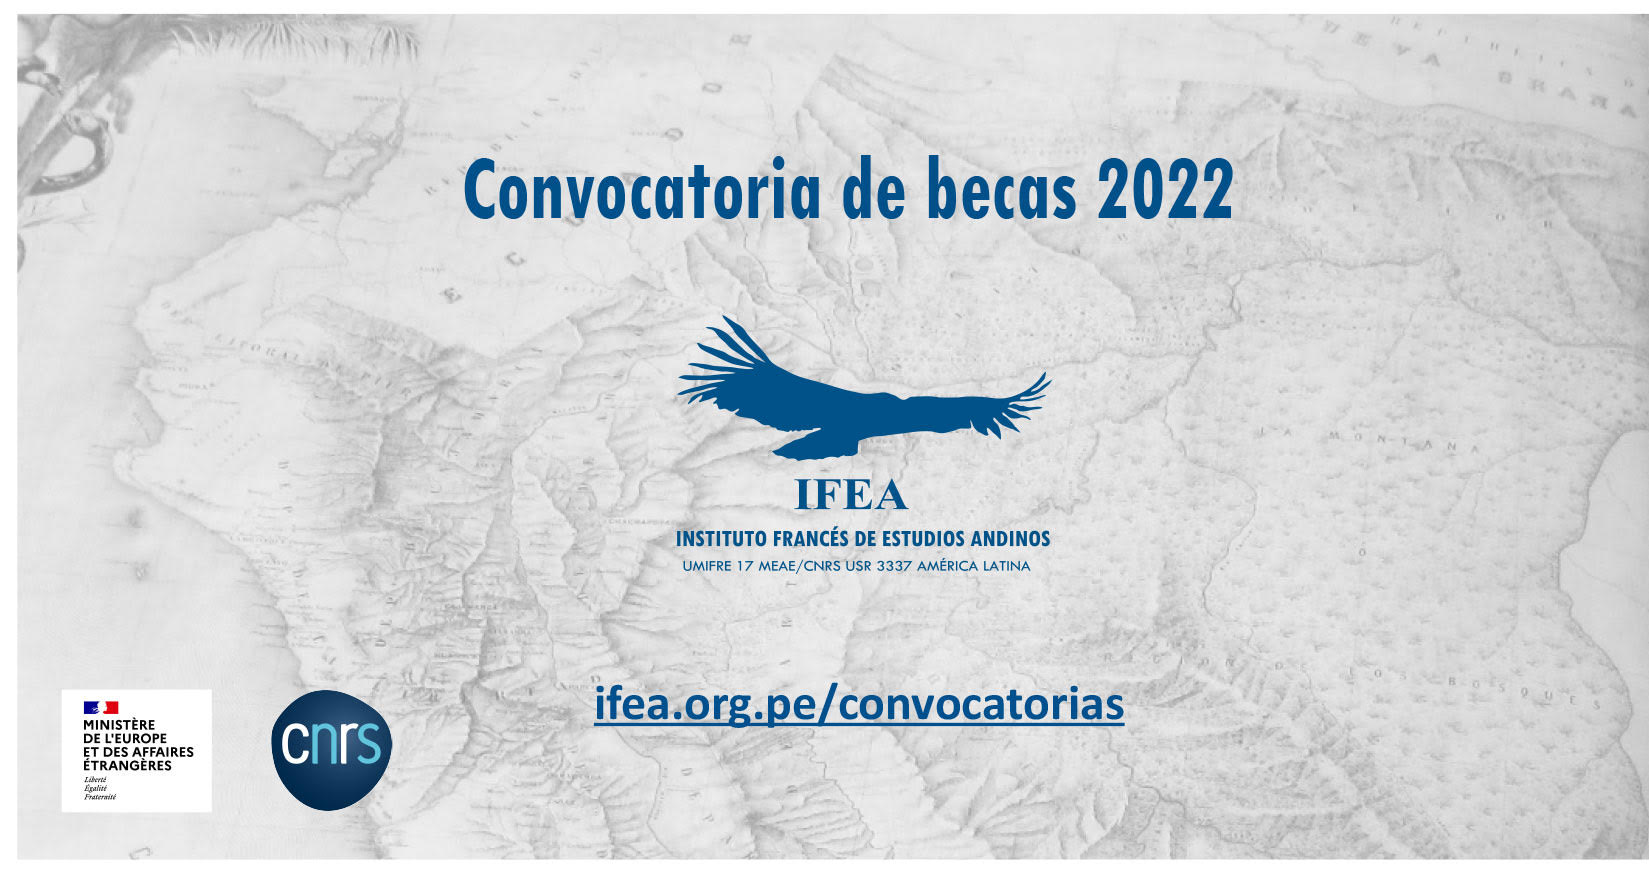 CONVOCATORIA DE BECAS IFEA 2022 